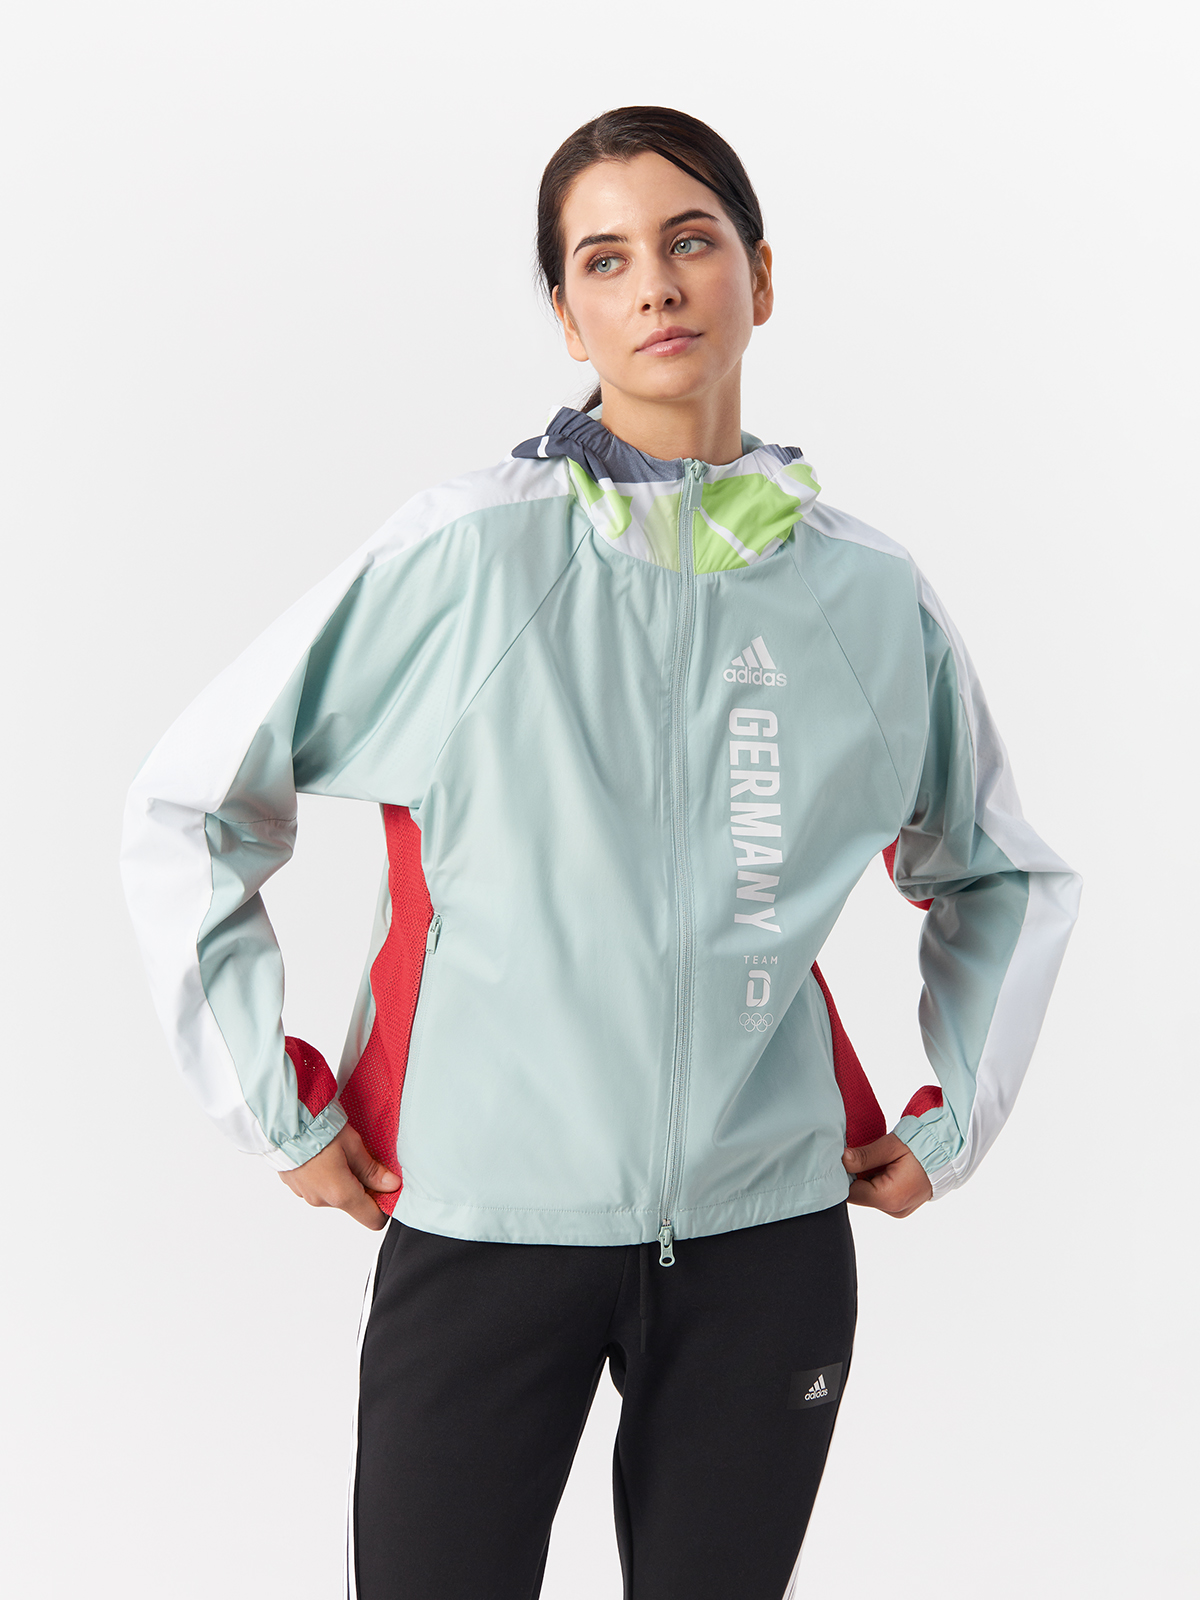 Ветровка Adidas для женщин, на молнии, FS0074, Grntnt, 40